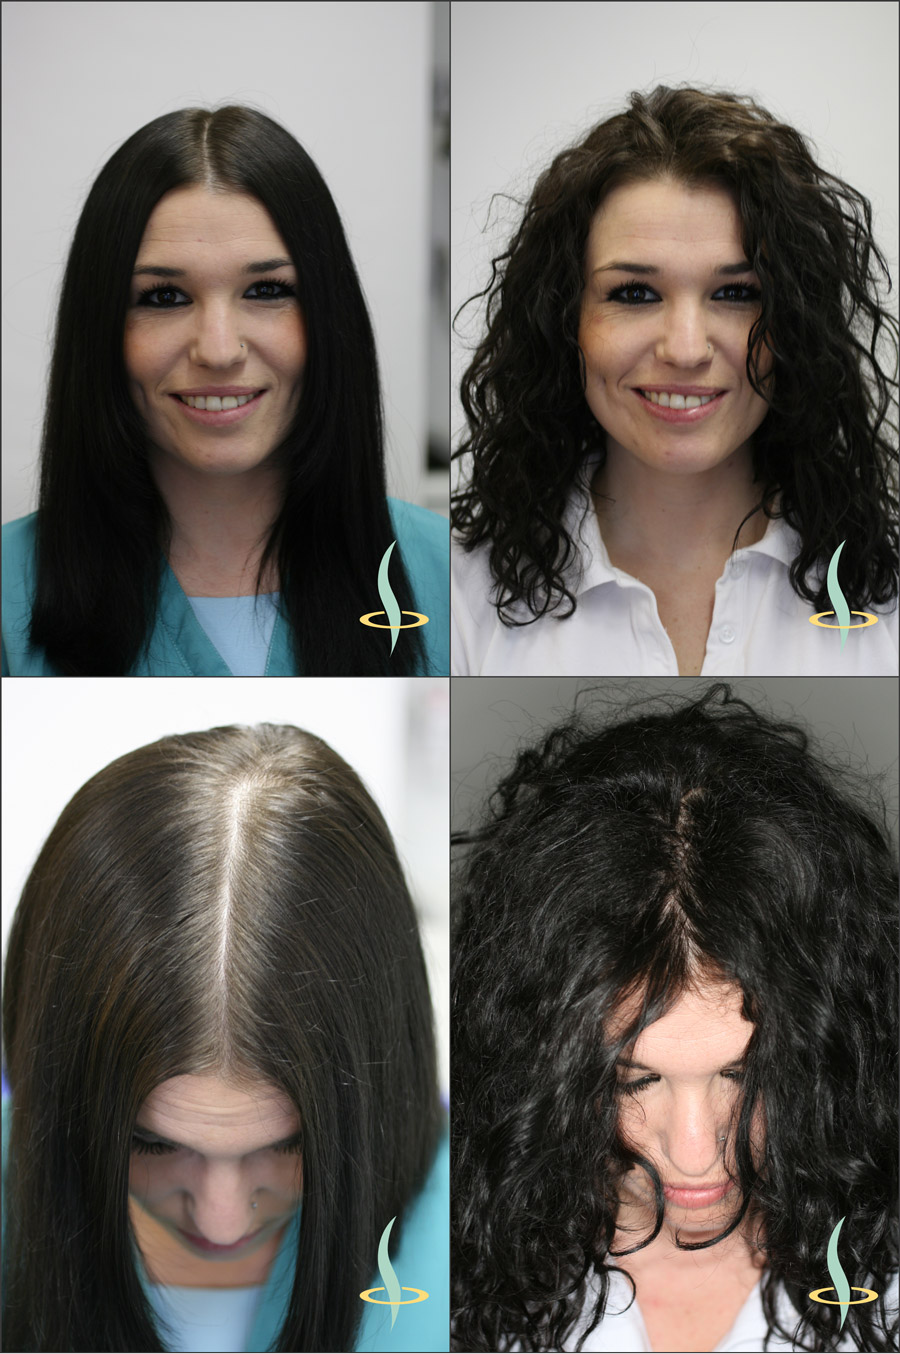 Resim 2: Düz (sol) ve dalgalı (sağ) saçların kafa derisinin görülmesi üzerindeki görsel etkisi. (Kaynak: Kendi görselimiz)